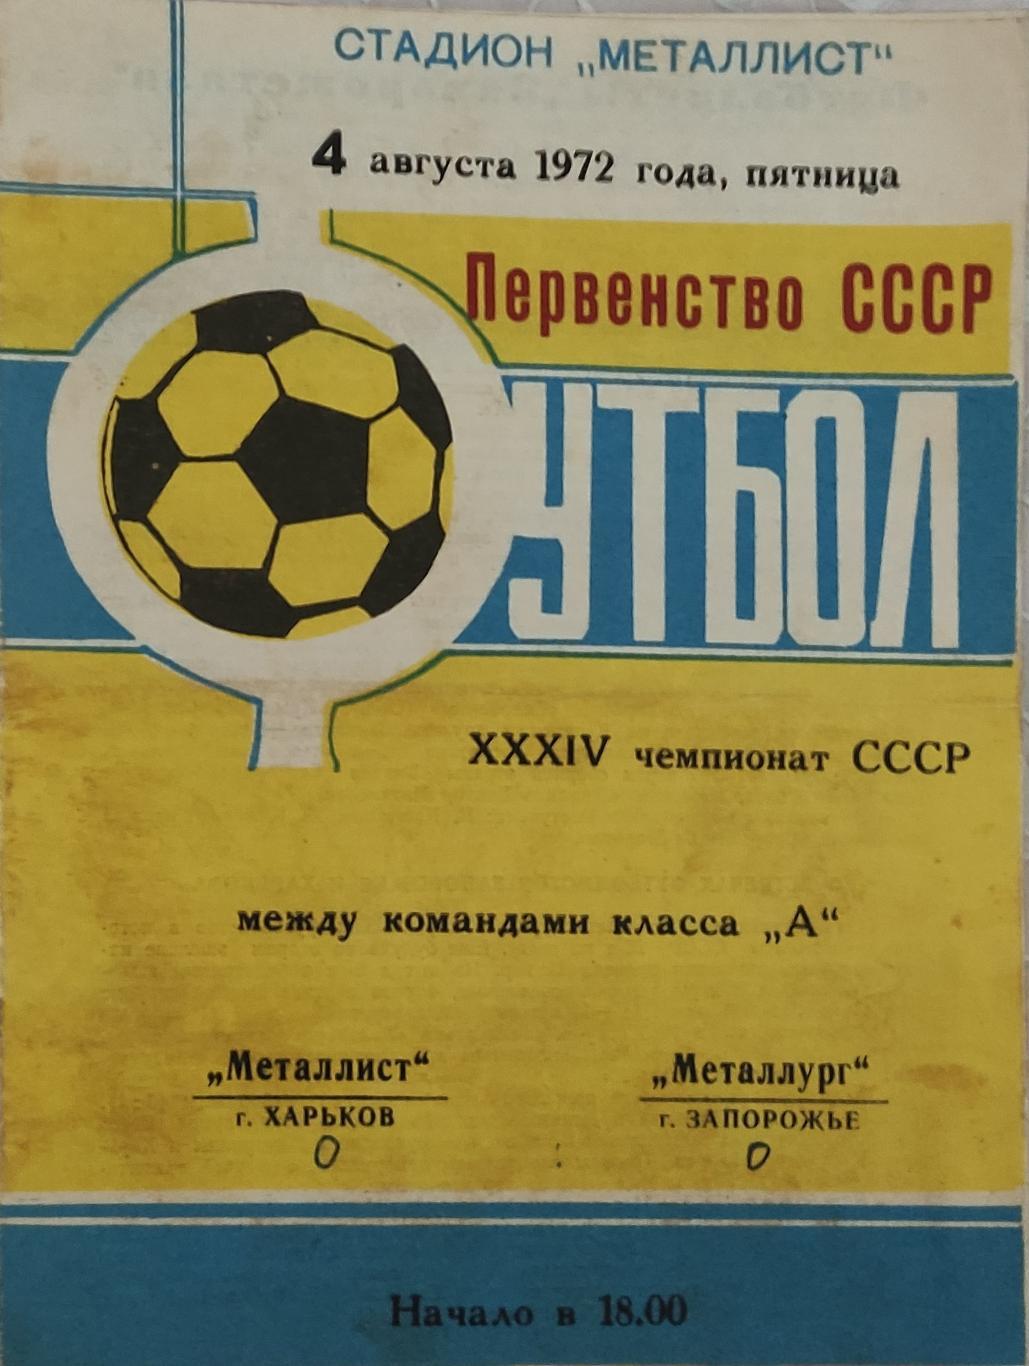 Металлист -Металлург Запорожье 4.08.1972